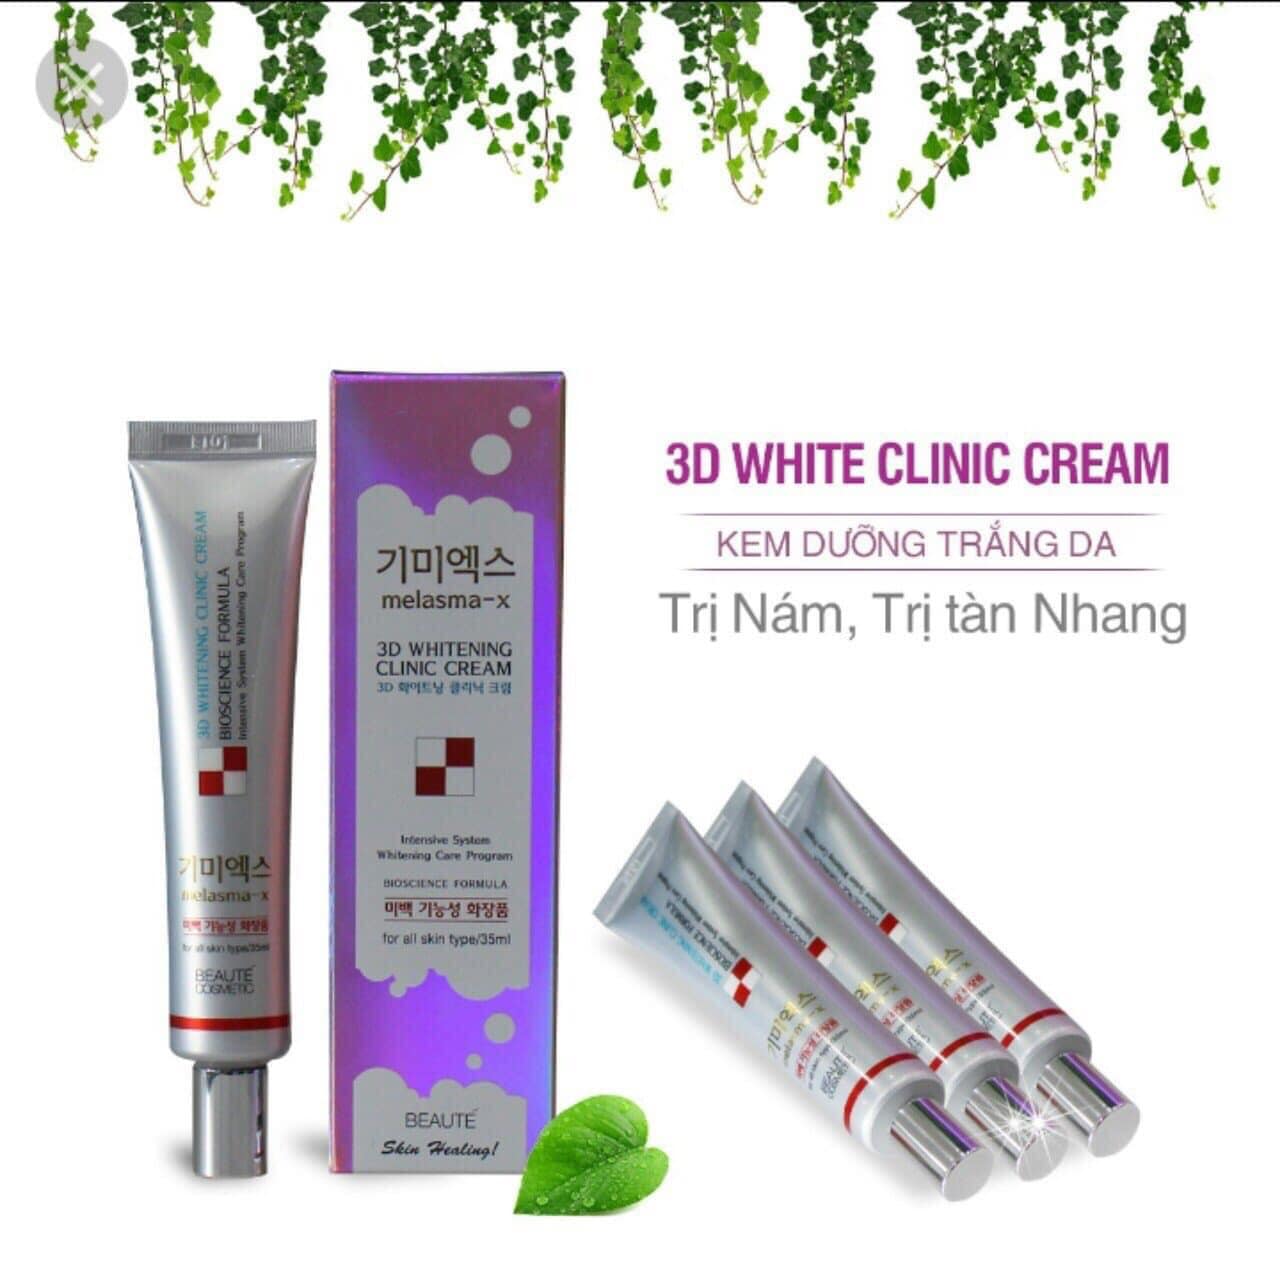 kem-duong-trang-da-beaute-cosmetic-3d-whitening-clinic-cream-dac-tri-nam